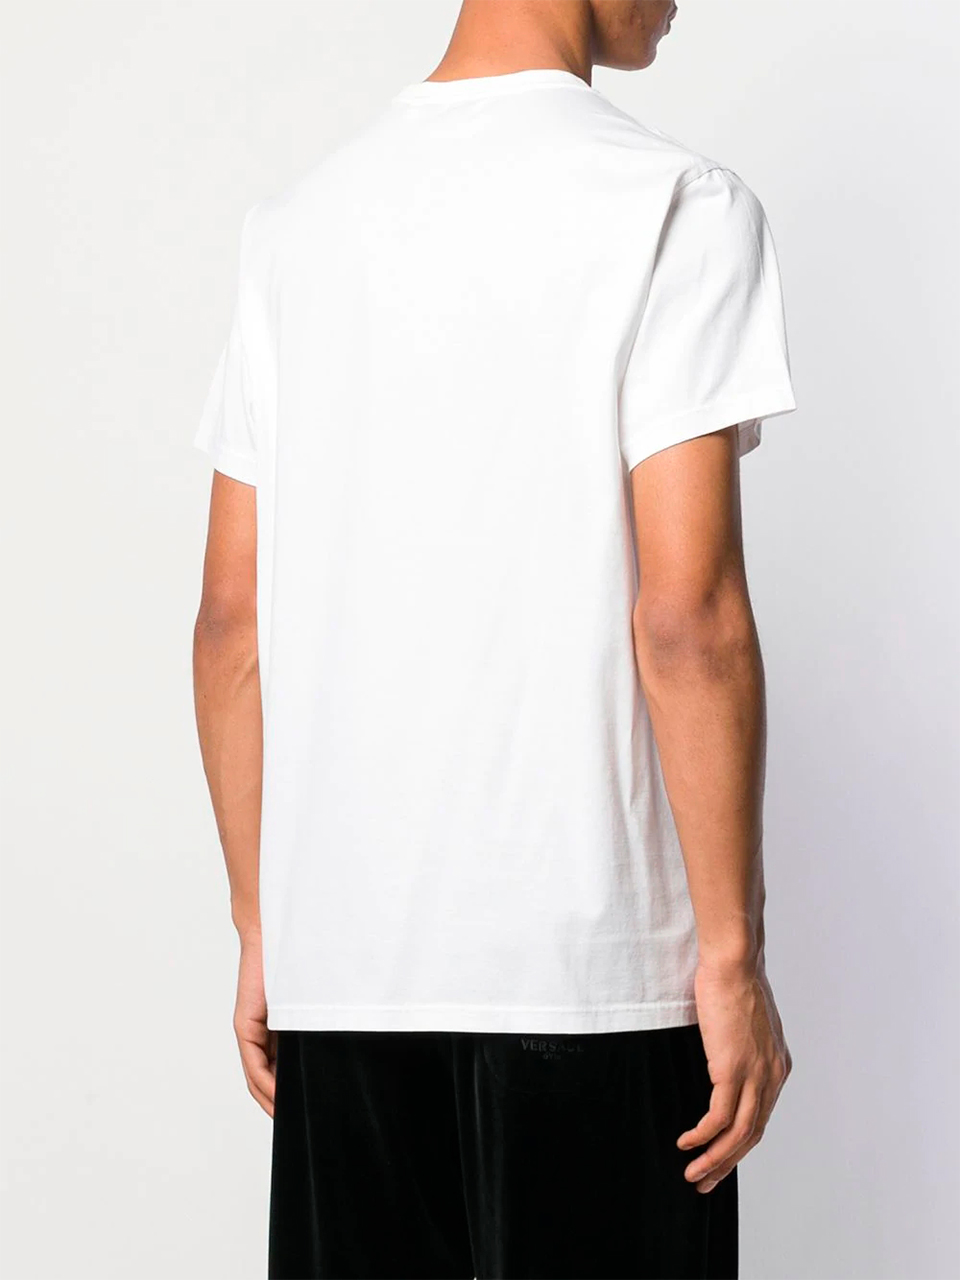 Imagem de: Camiseta Burberry Branca com Logo Bordado